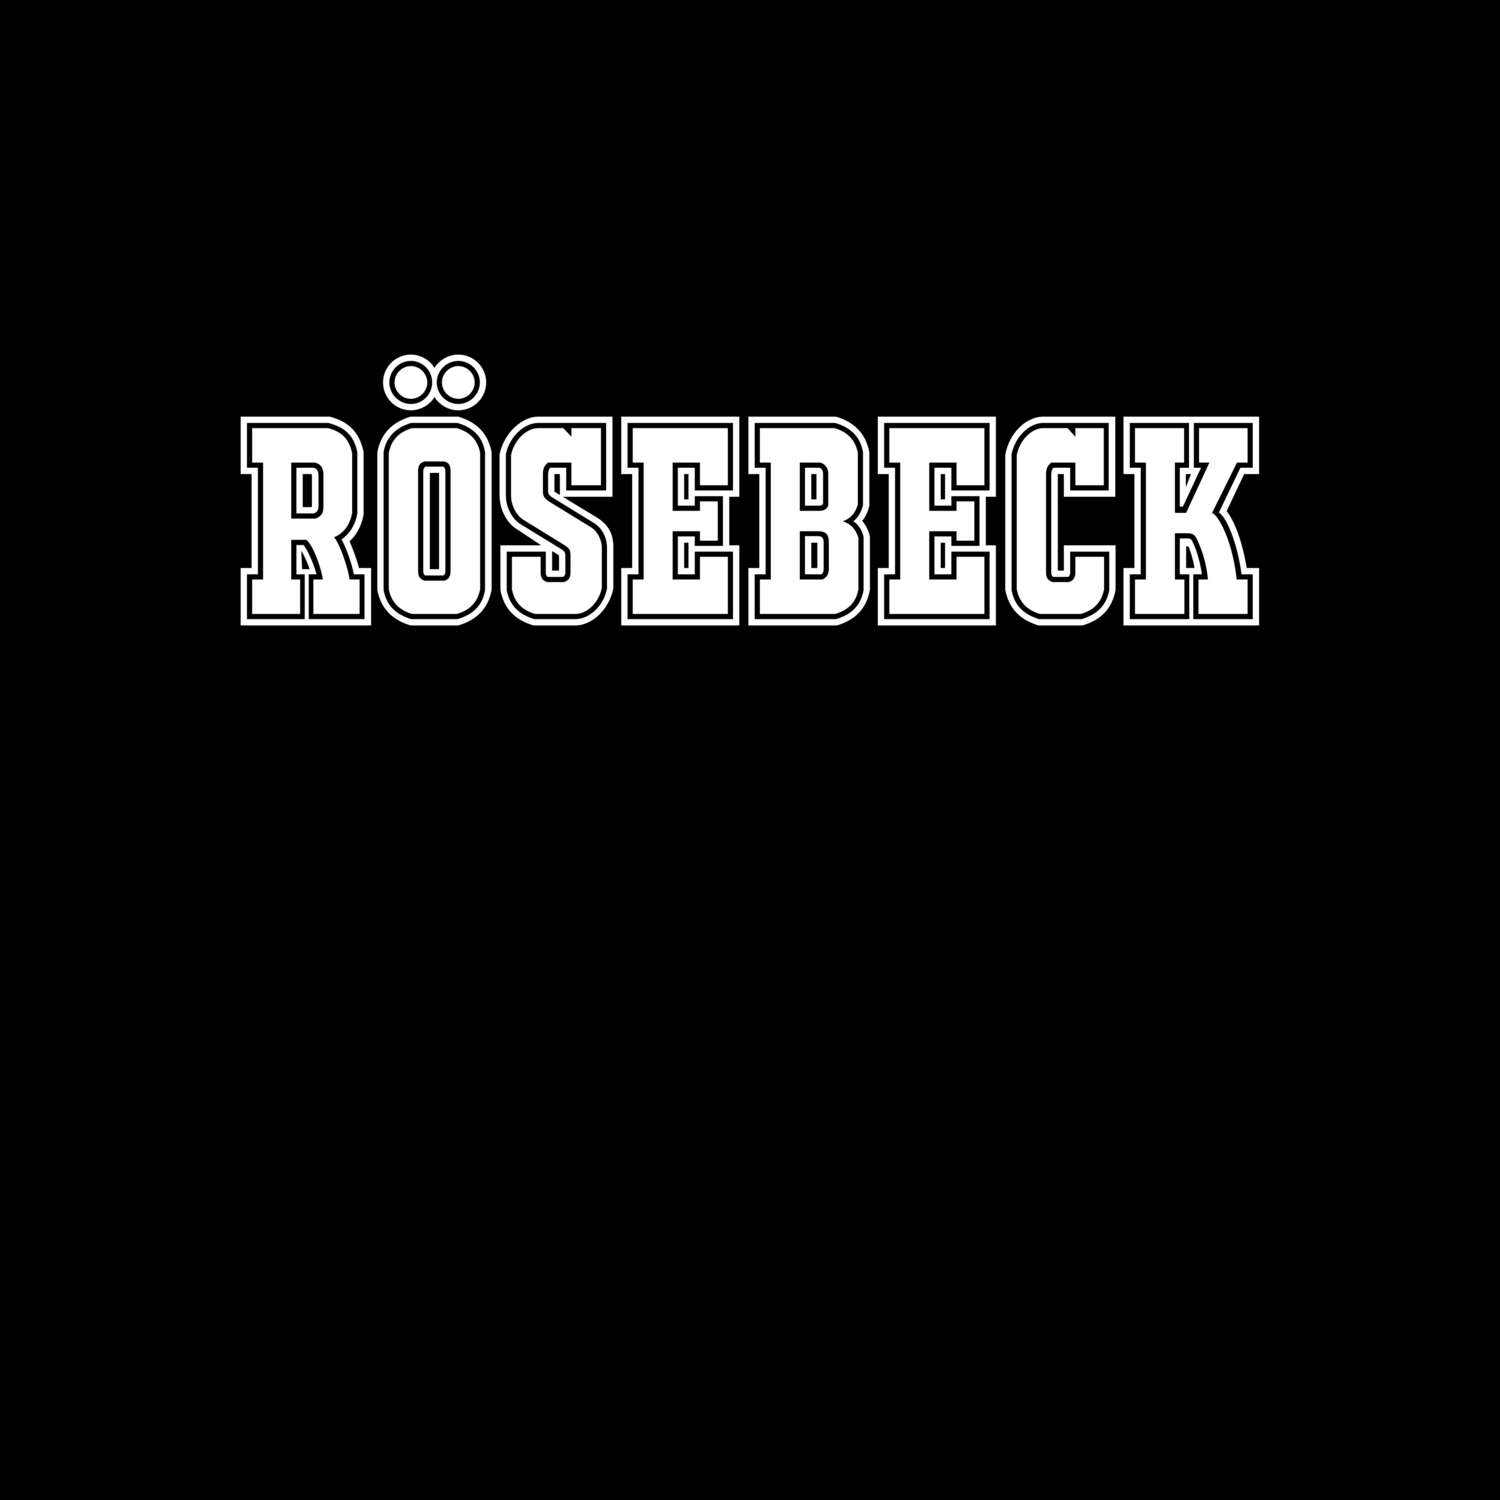 Rösebeck T-Shirt »Classic«